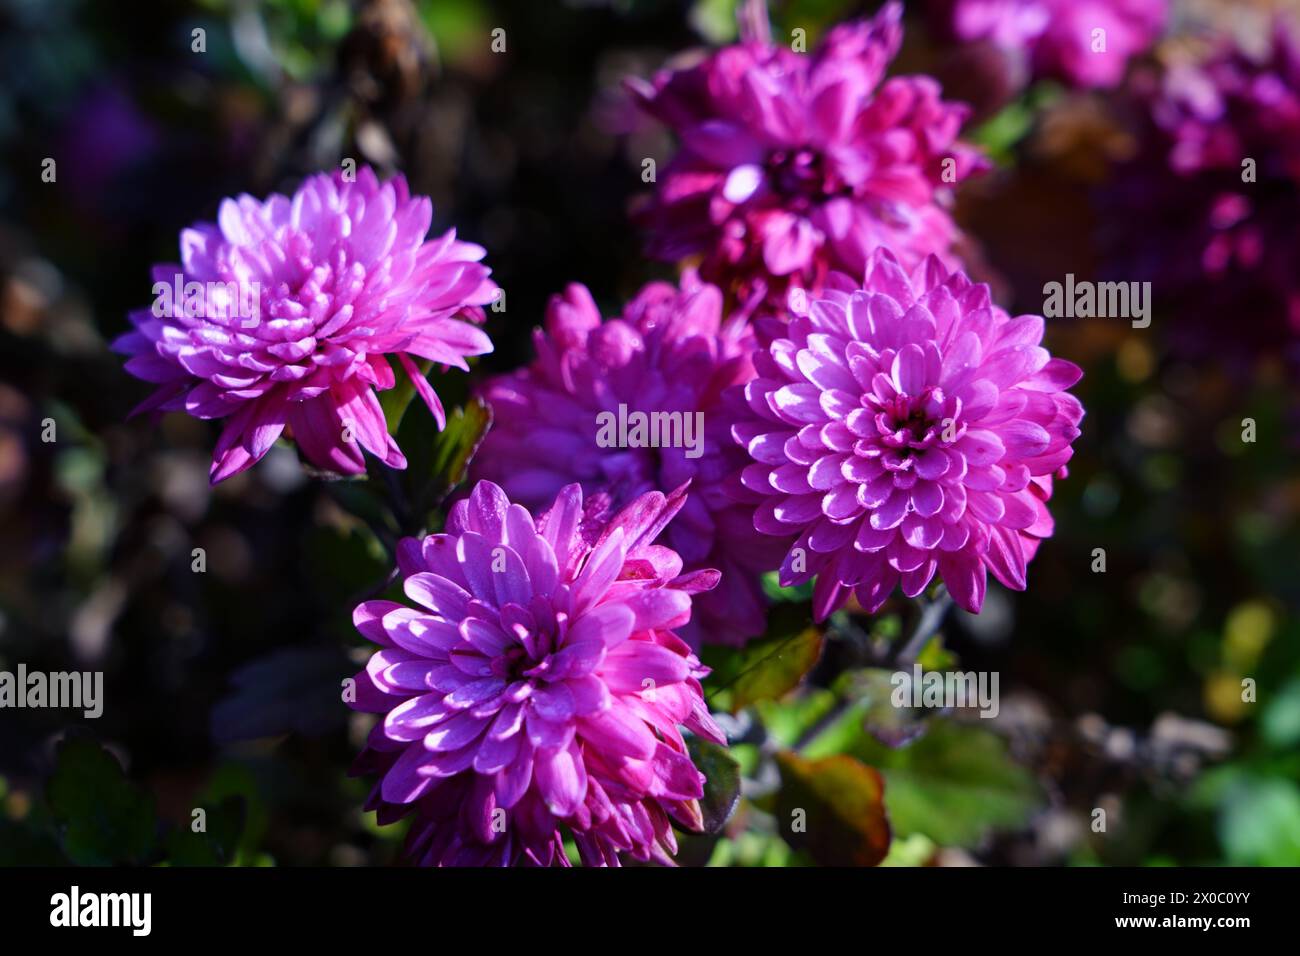 Aster or settembrino: the flower representing September Stock Photo